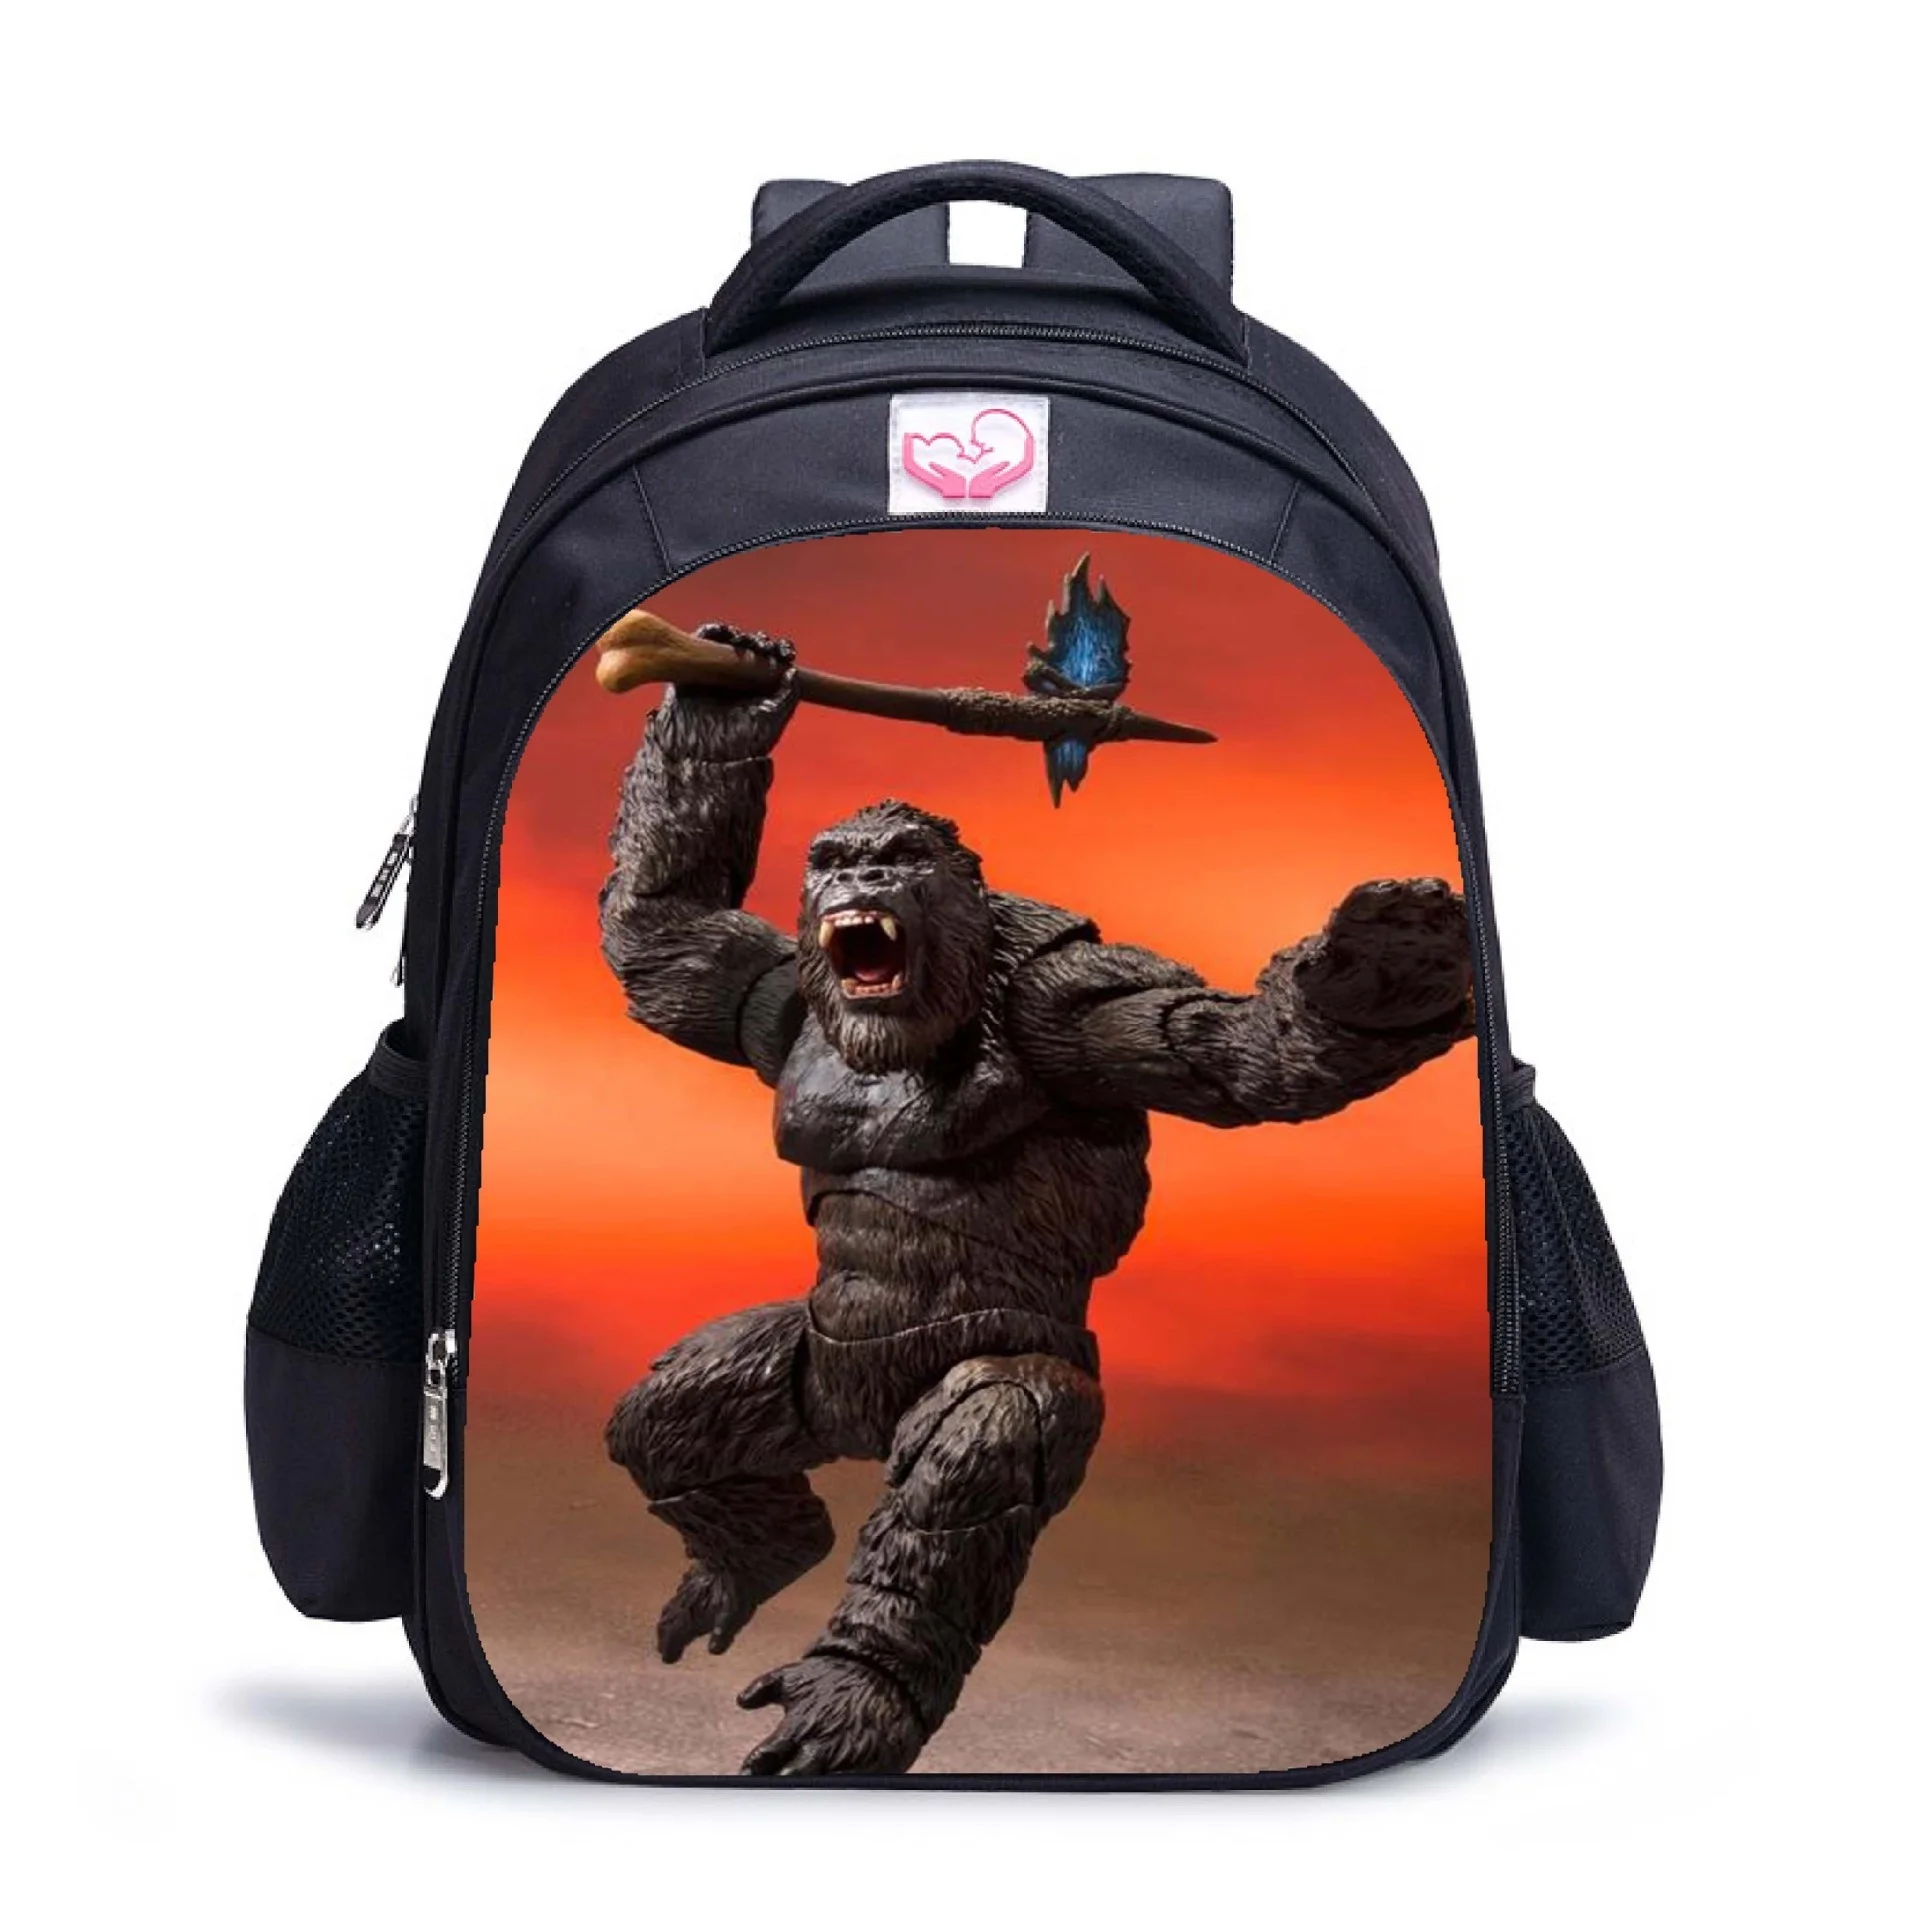 

Wholesale custom print school bag gorilla kids bags backpack waterproof kids cartoon school bags for students